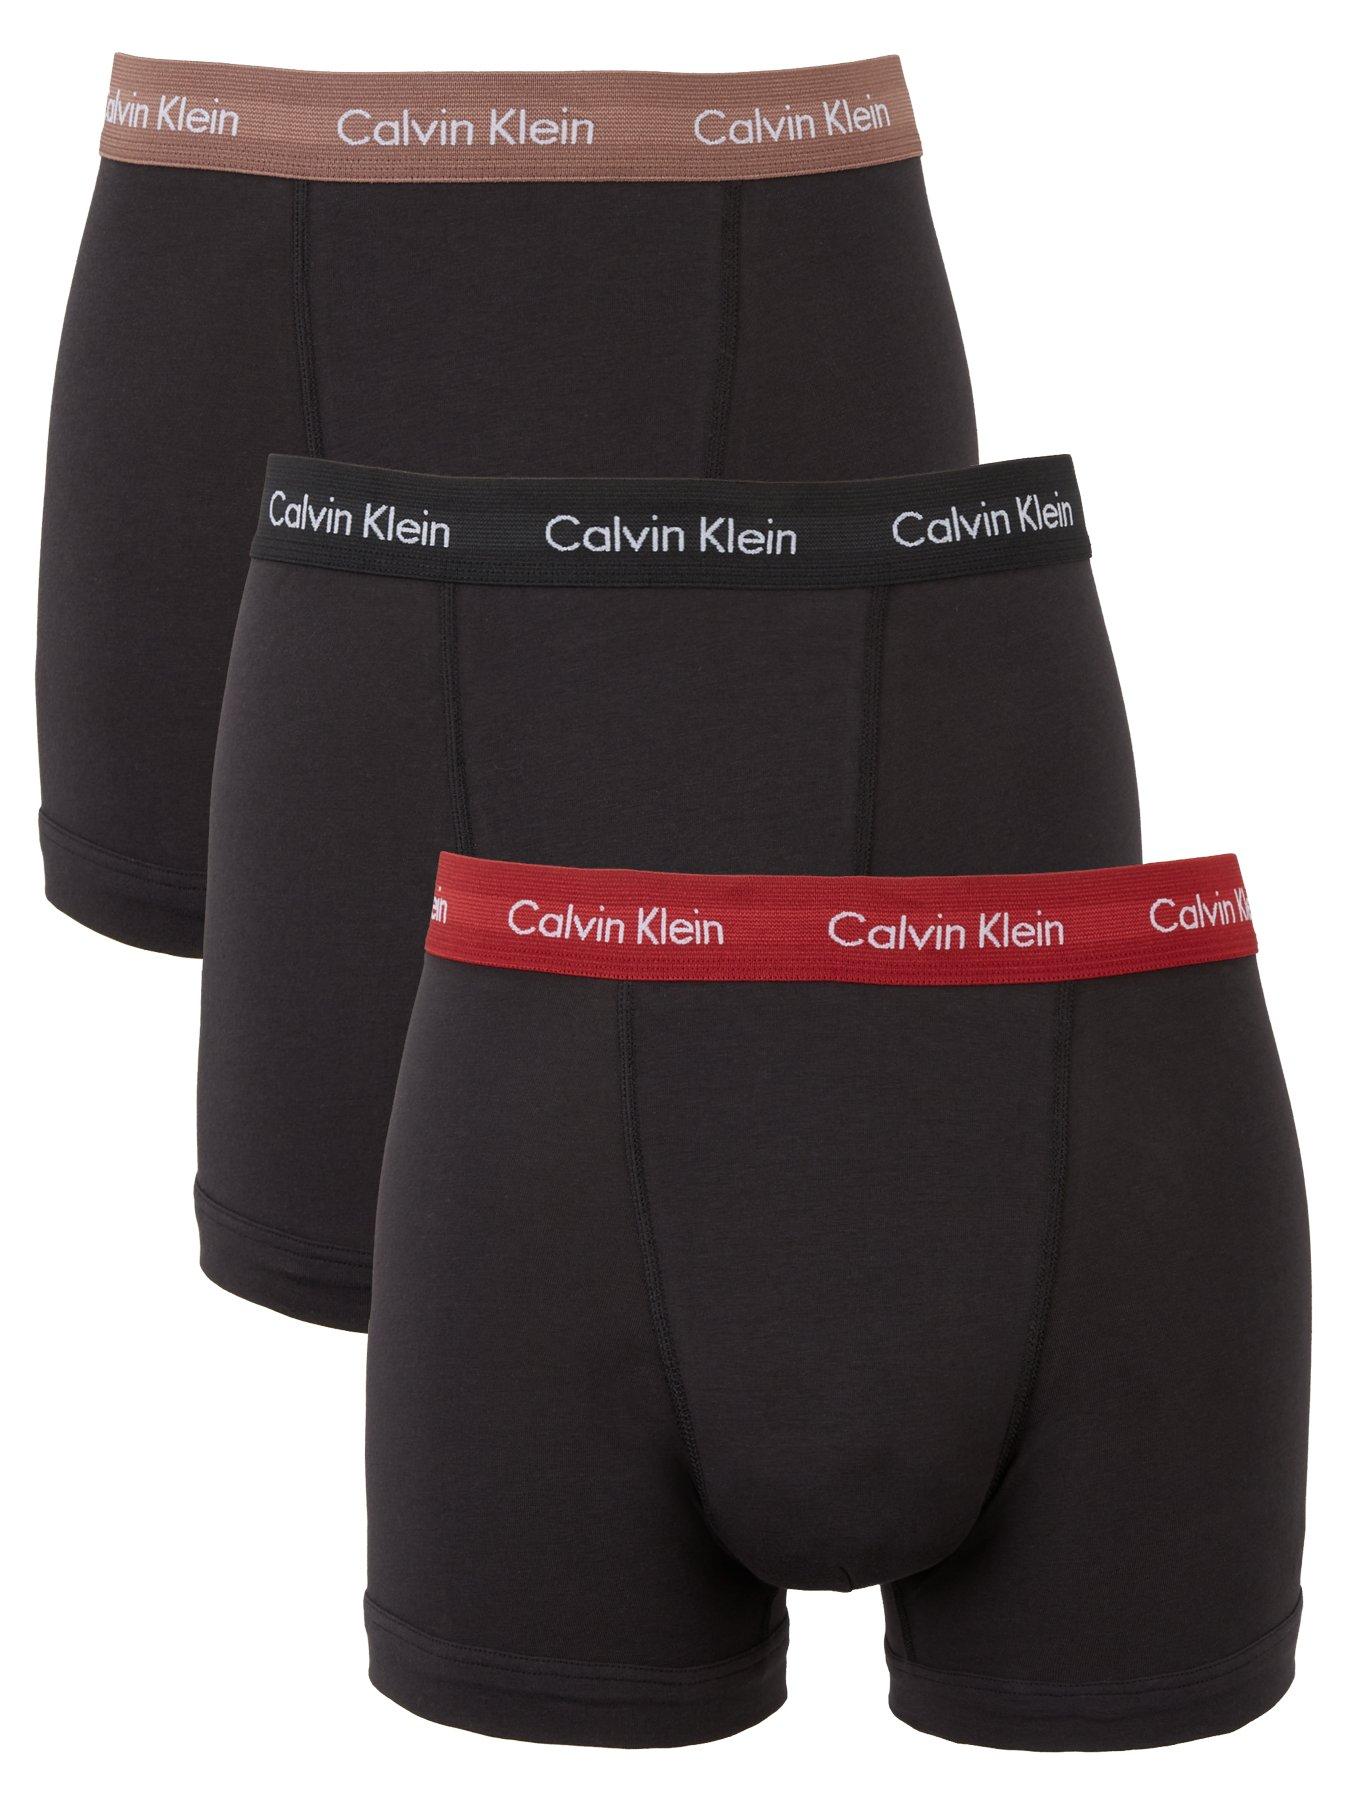 3 Packs Men's Cotton High Quality Boxers Herren Kleidung Unterwäsche & Socken Unterwäsche 